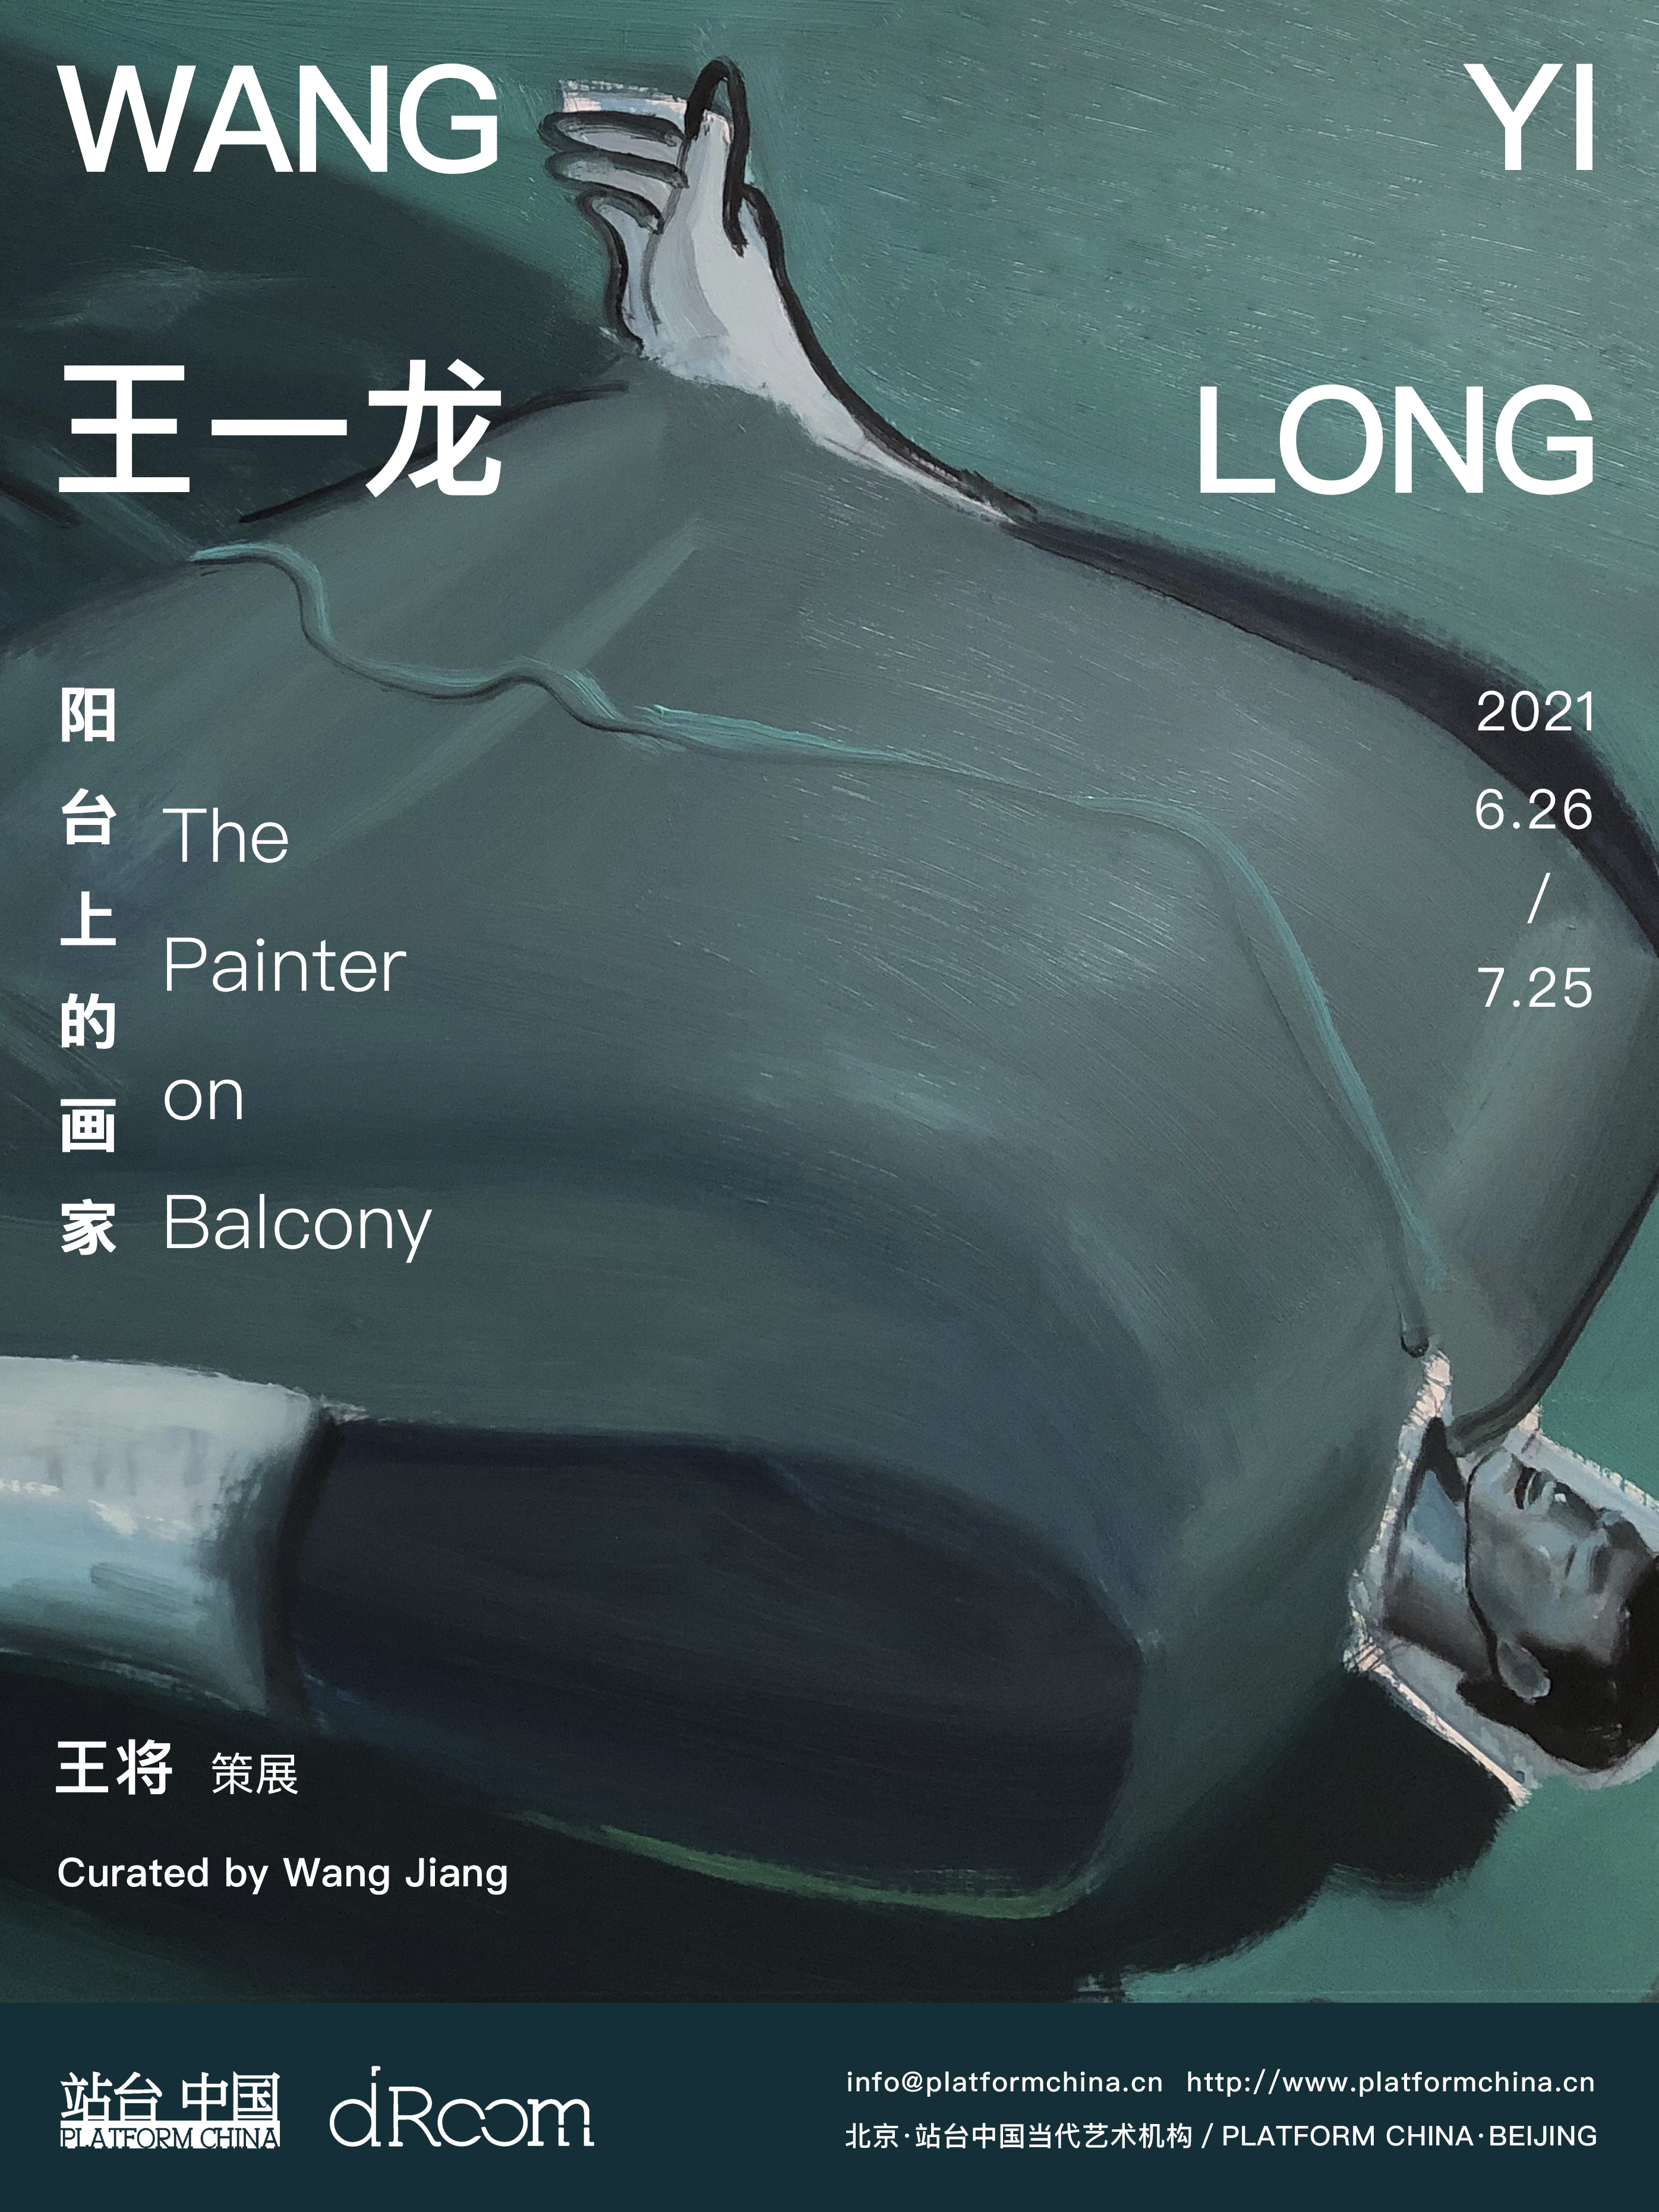 Wang Yilong: The Painter On Balcony